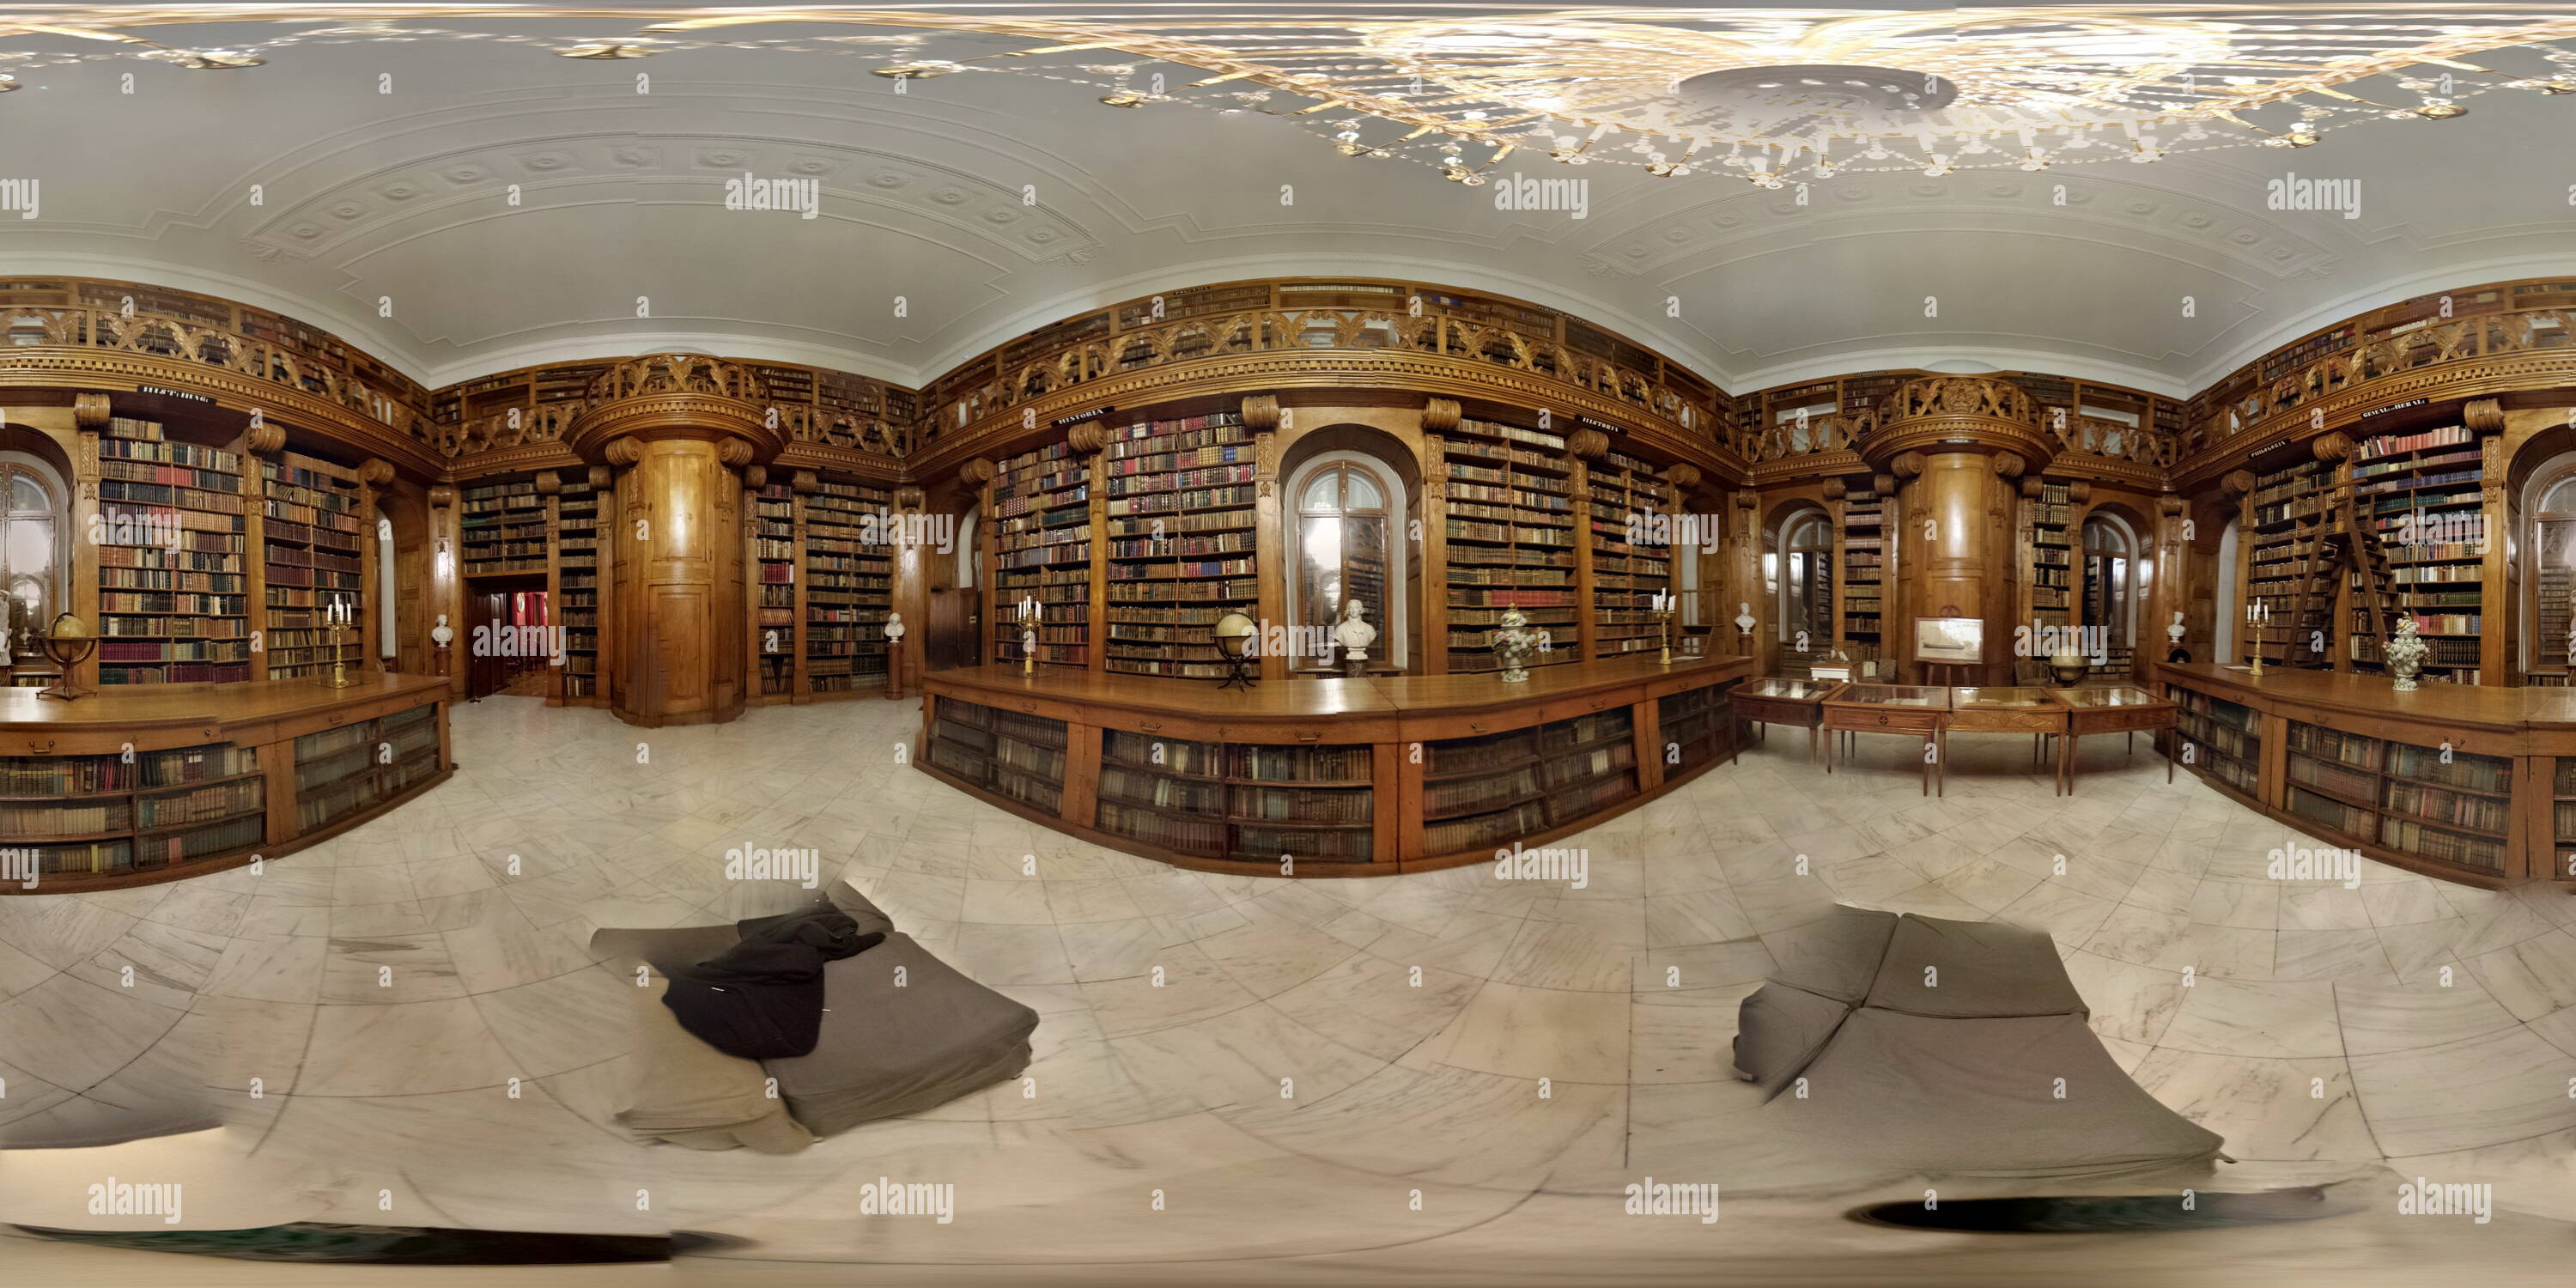 Vue panoramique à 360° de Château de festetics-keszthely helikon--bibliothèque